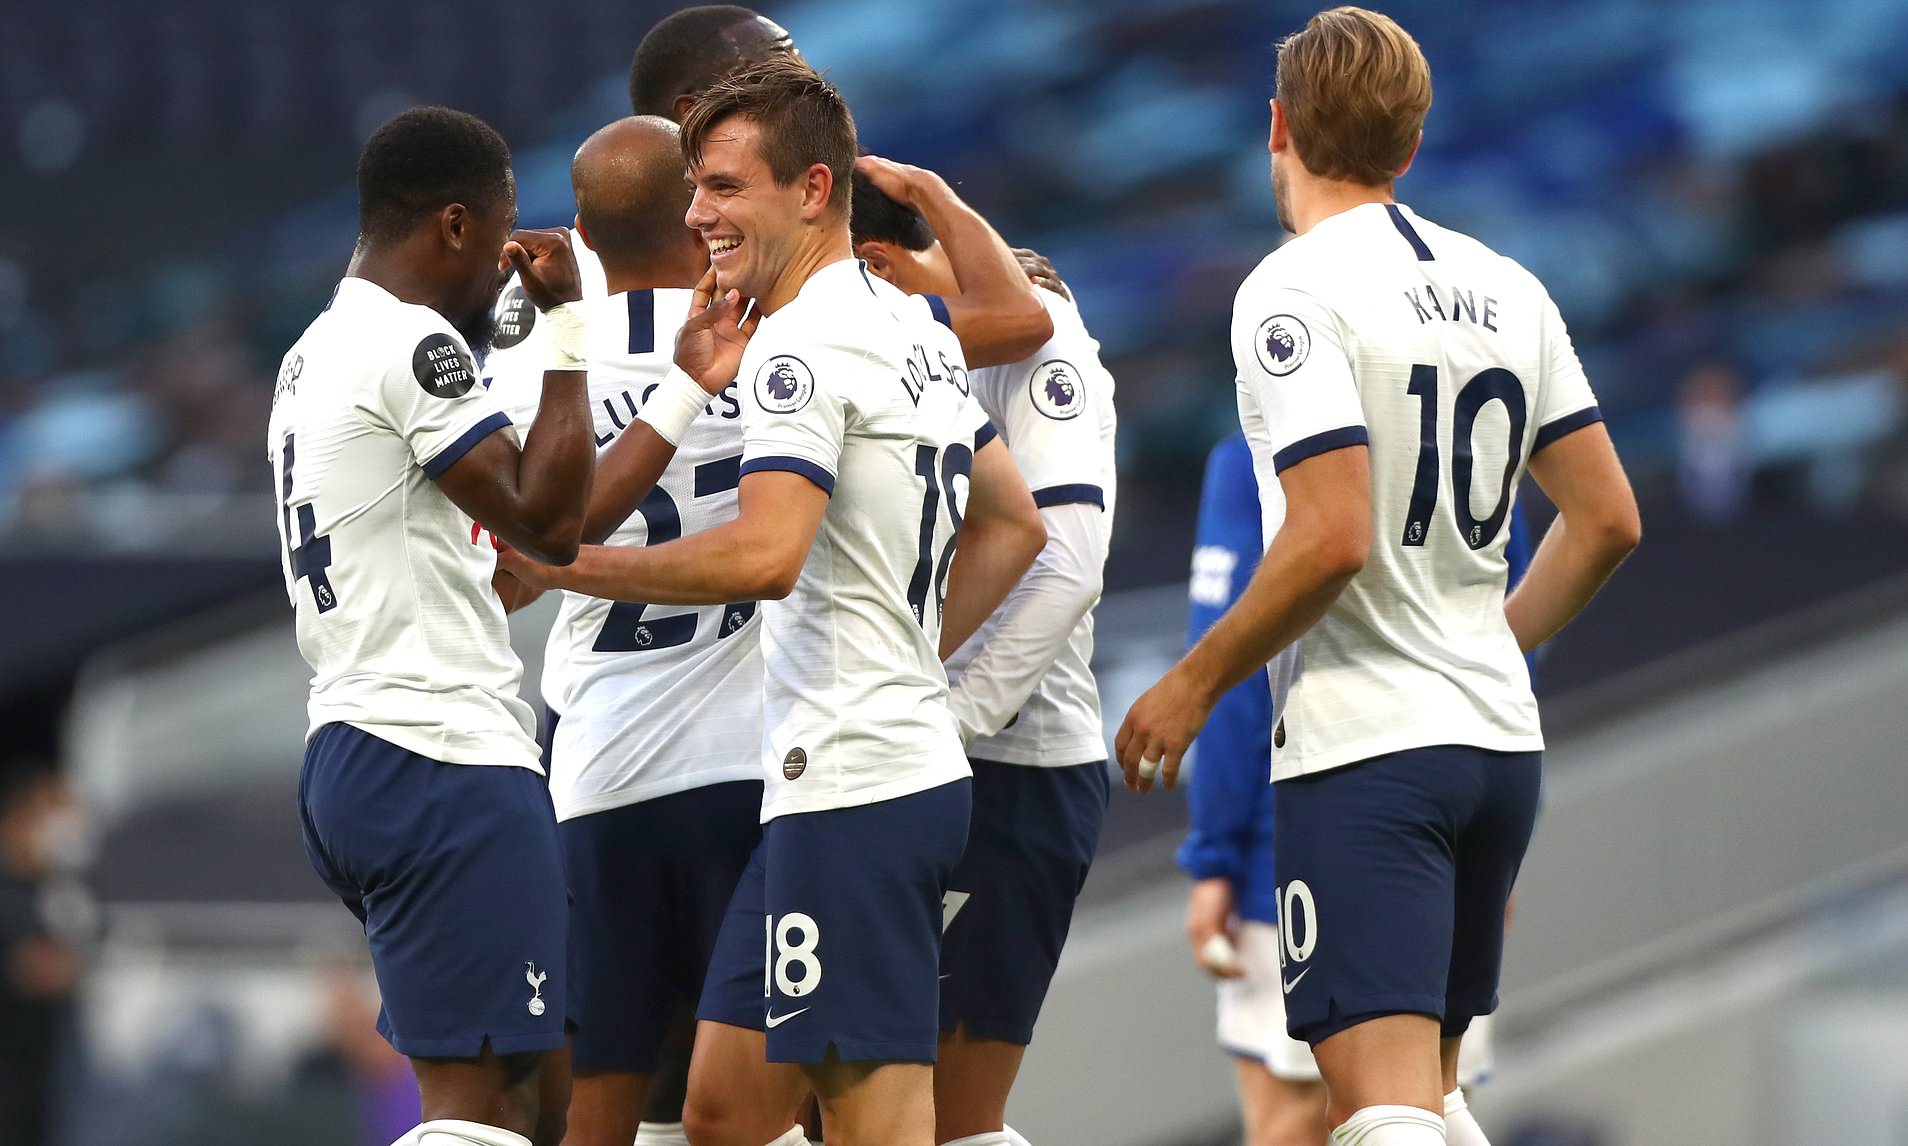 Tottenham bat difficilement Everton et se replace pour les places européennes